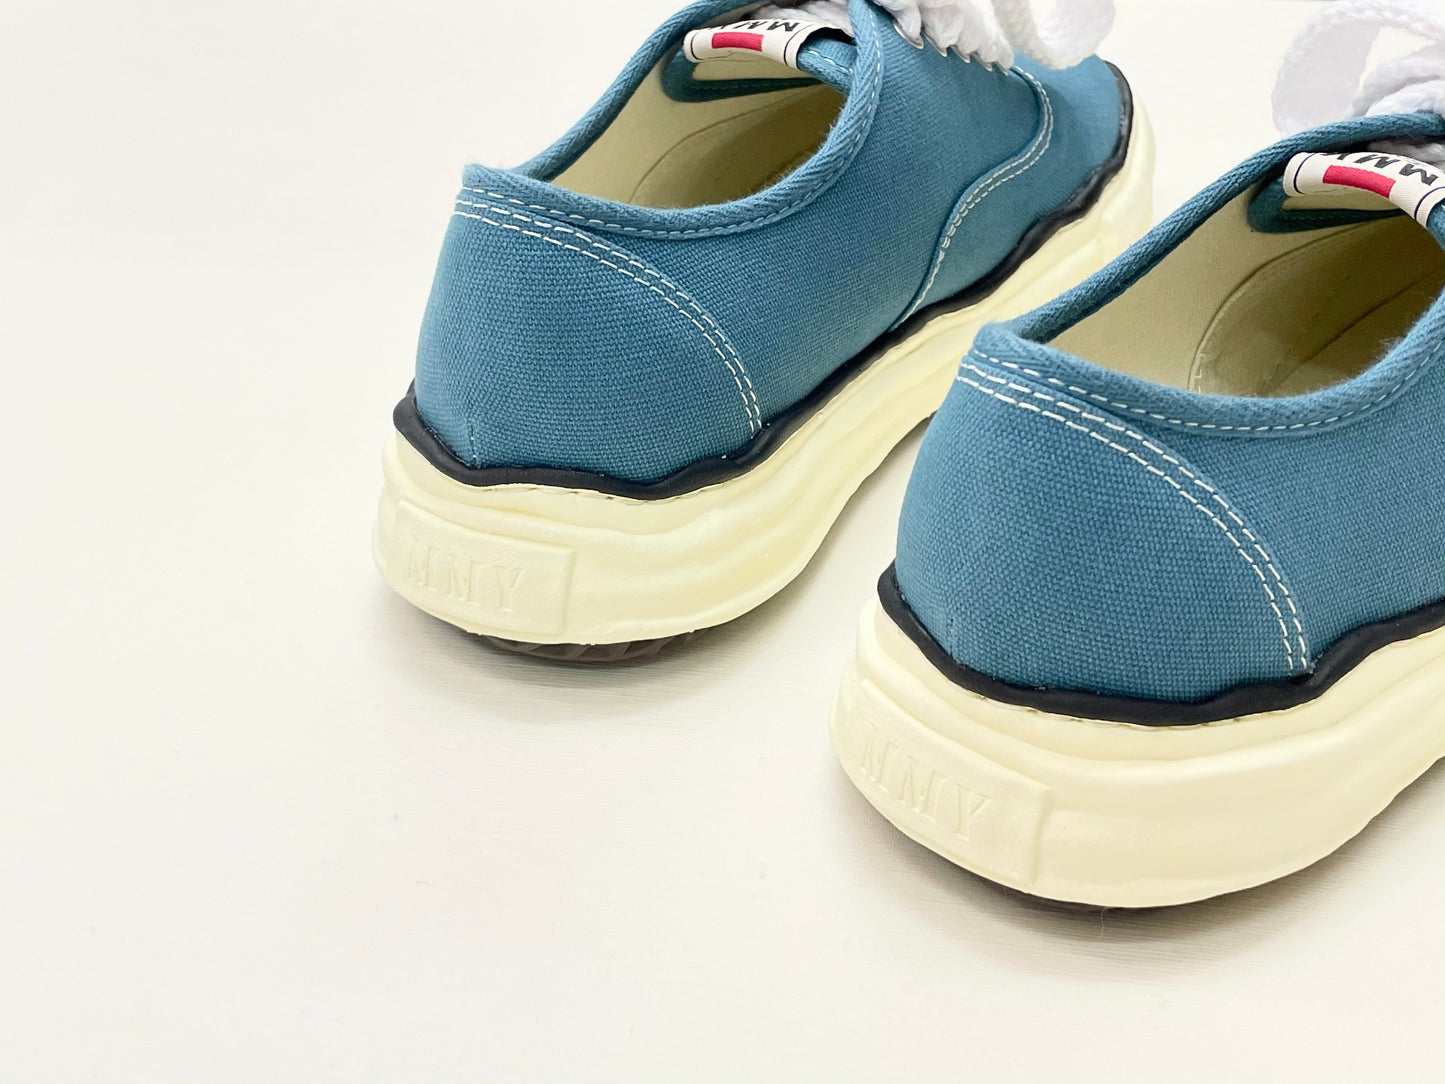 〖 Special Order 〗Maison Mihara Yasuhiro VL OG Sole Sneaker - Baker